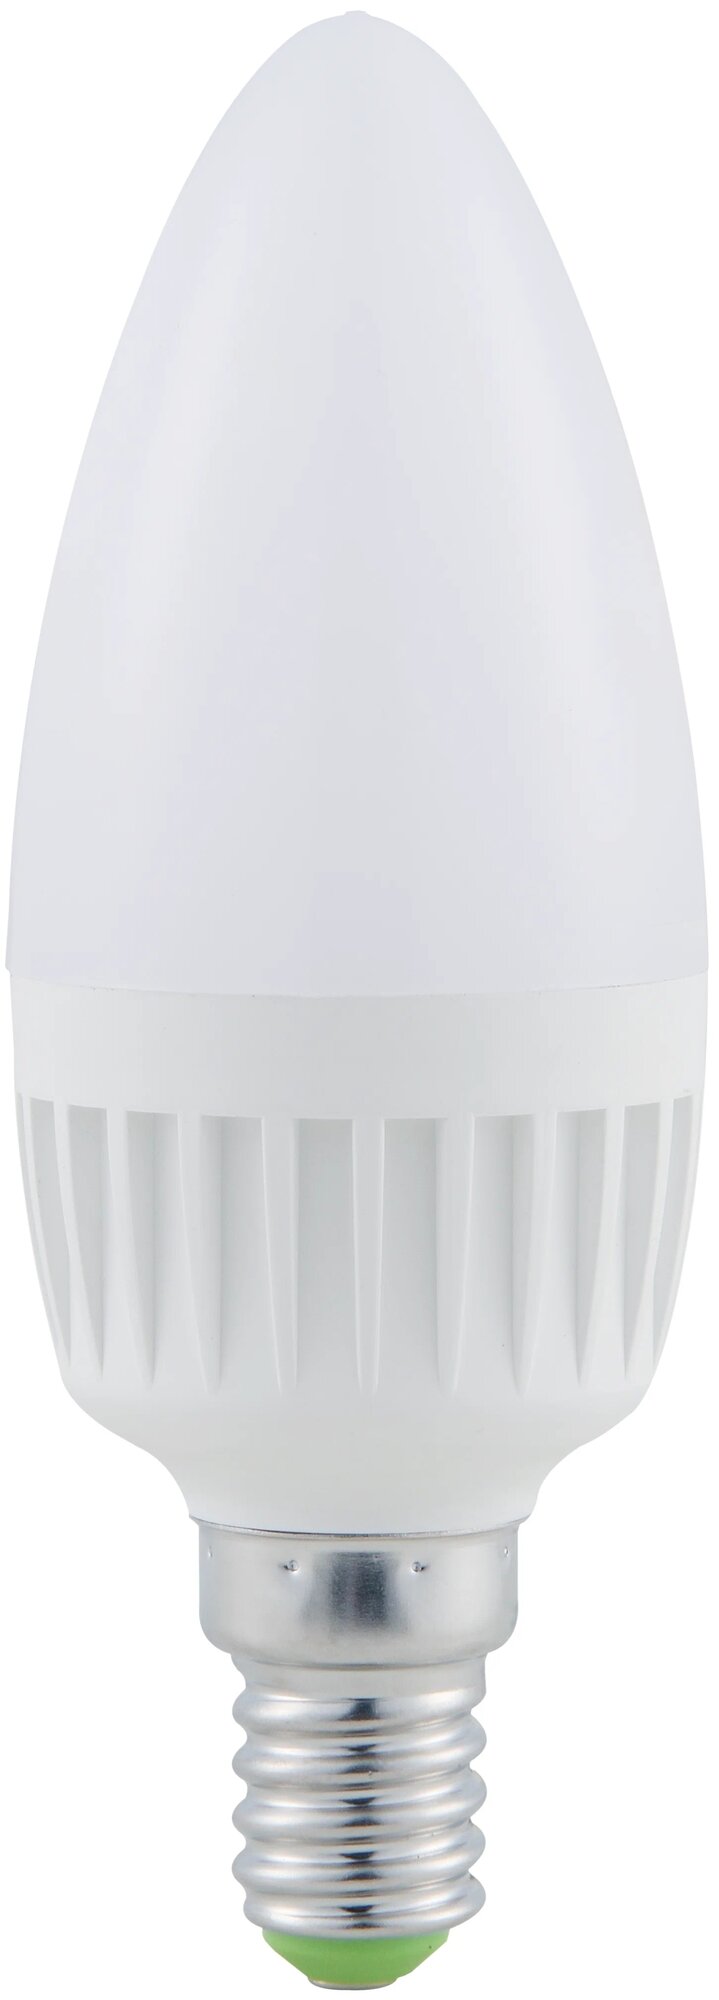 Лампа светодиодная Navigator 80545/80546, E14, C37, 6 Вт, 4000 К